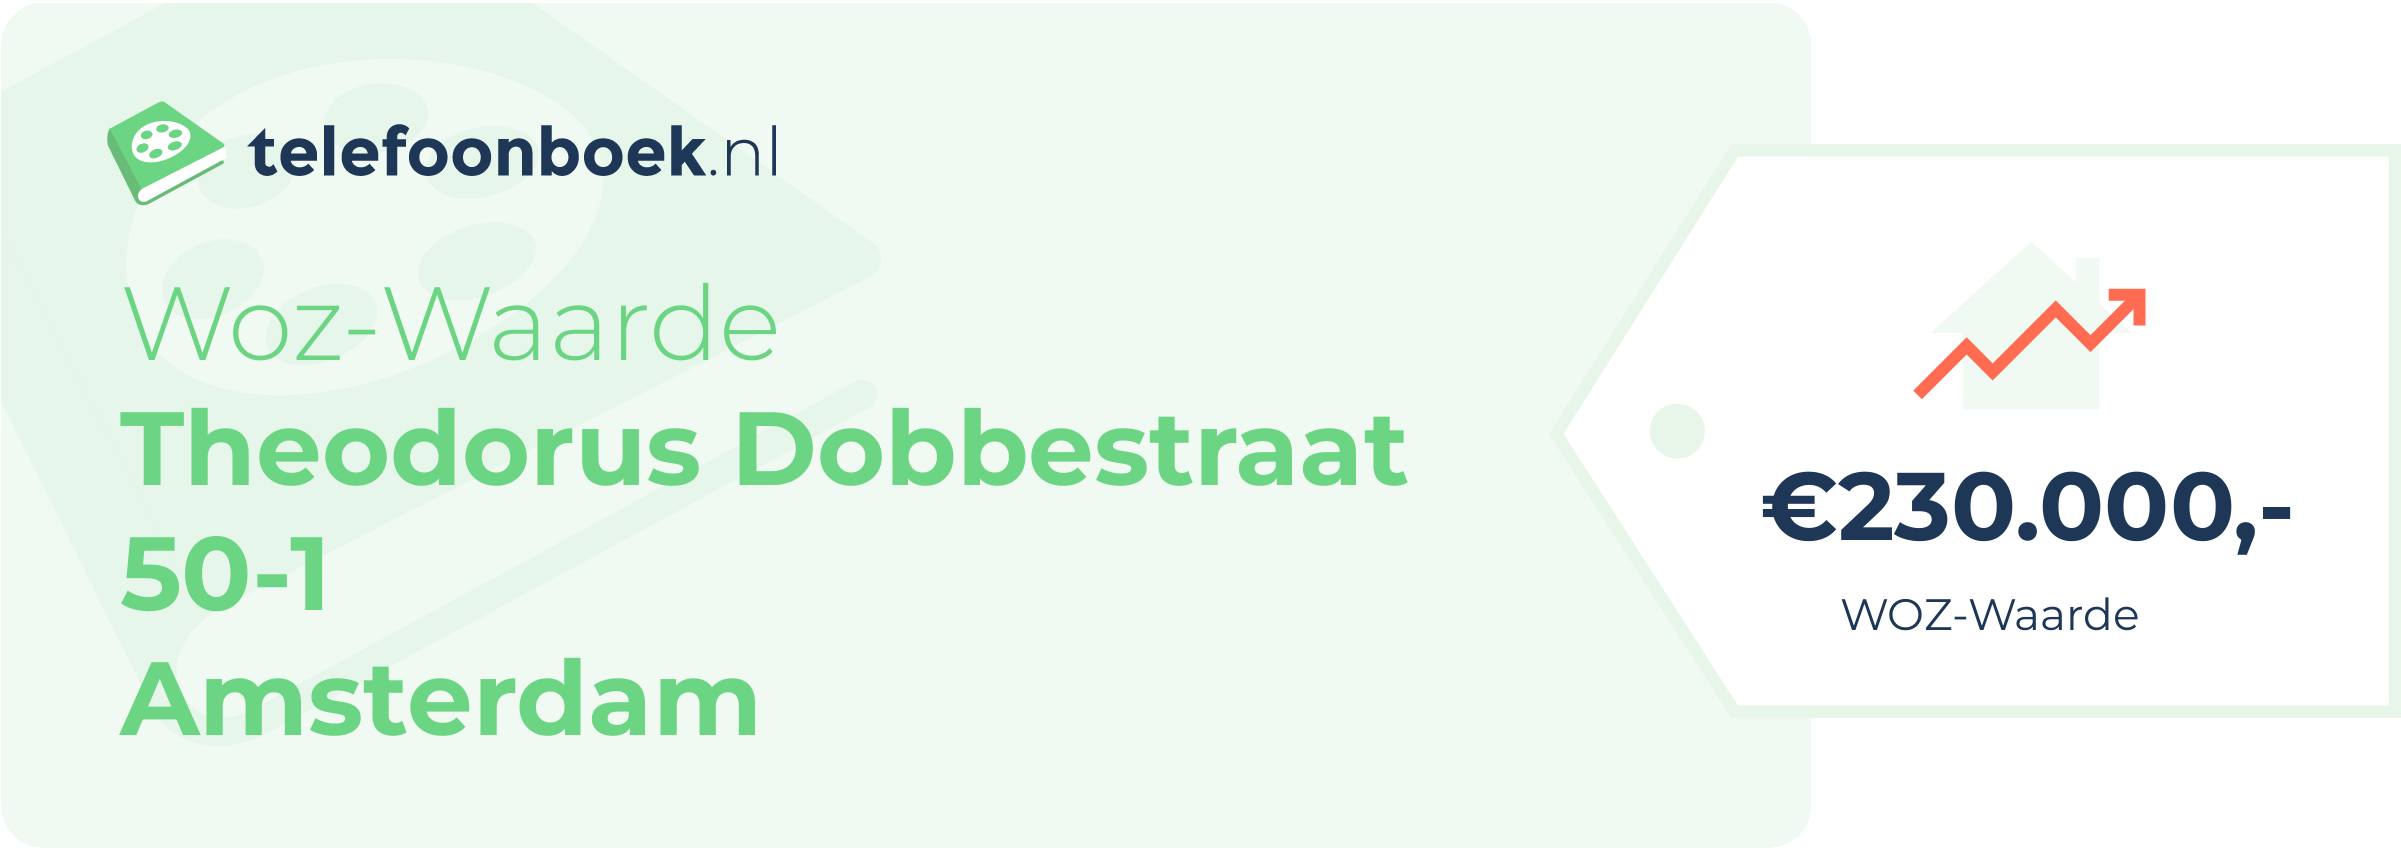 WOZ-waarde Theodorus Dobbestraat 50-1 Amsterdam